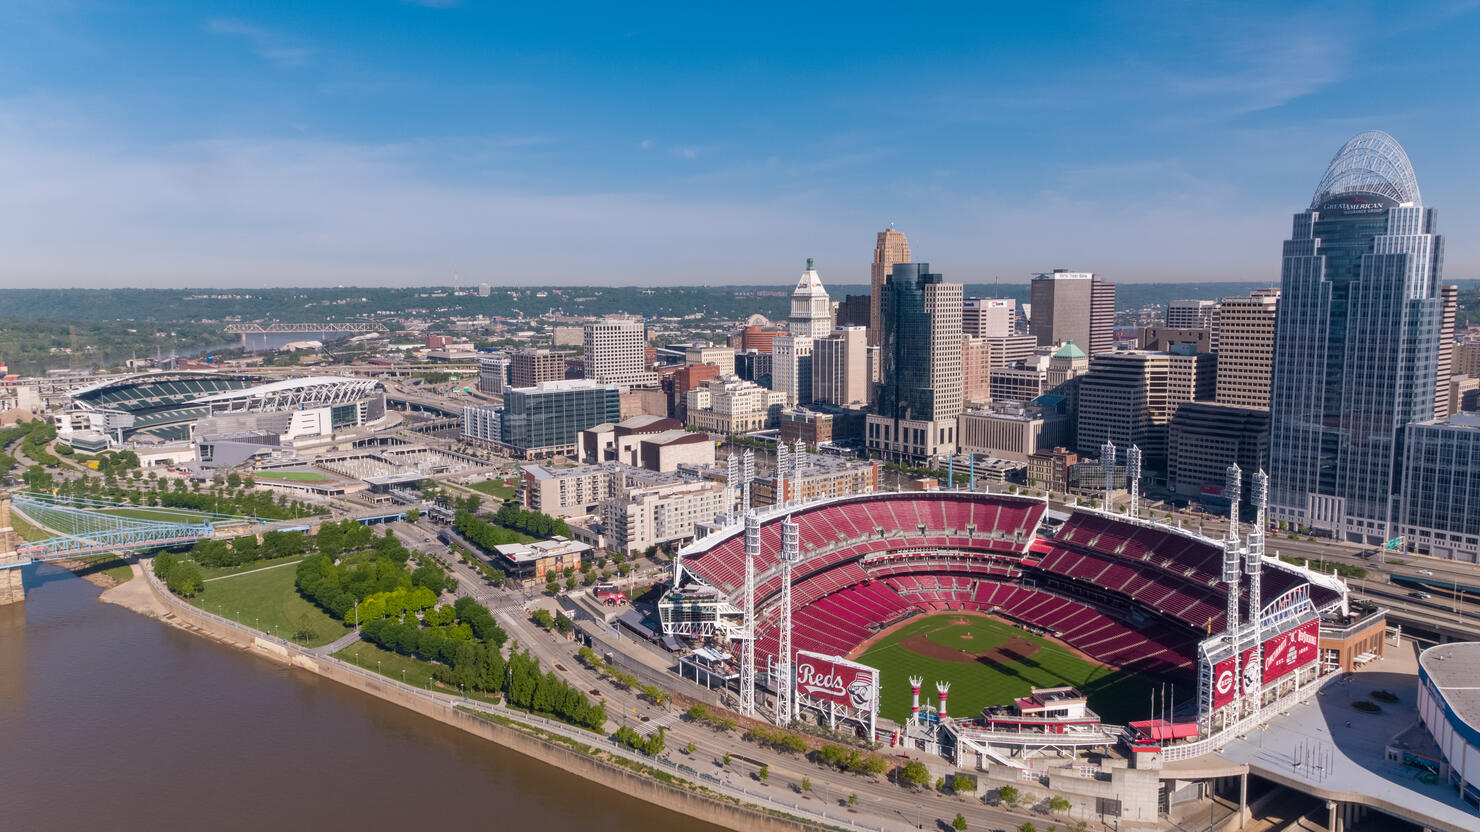 Aerial view of sports stadiums in Cincinnati